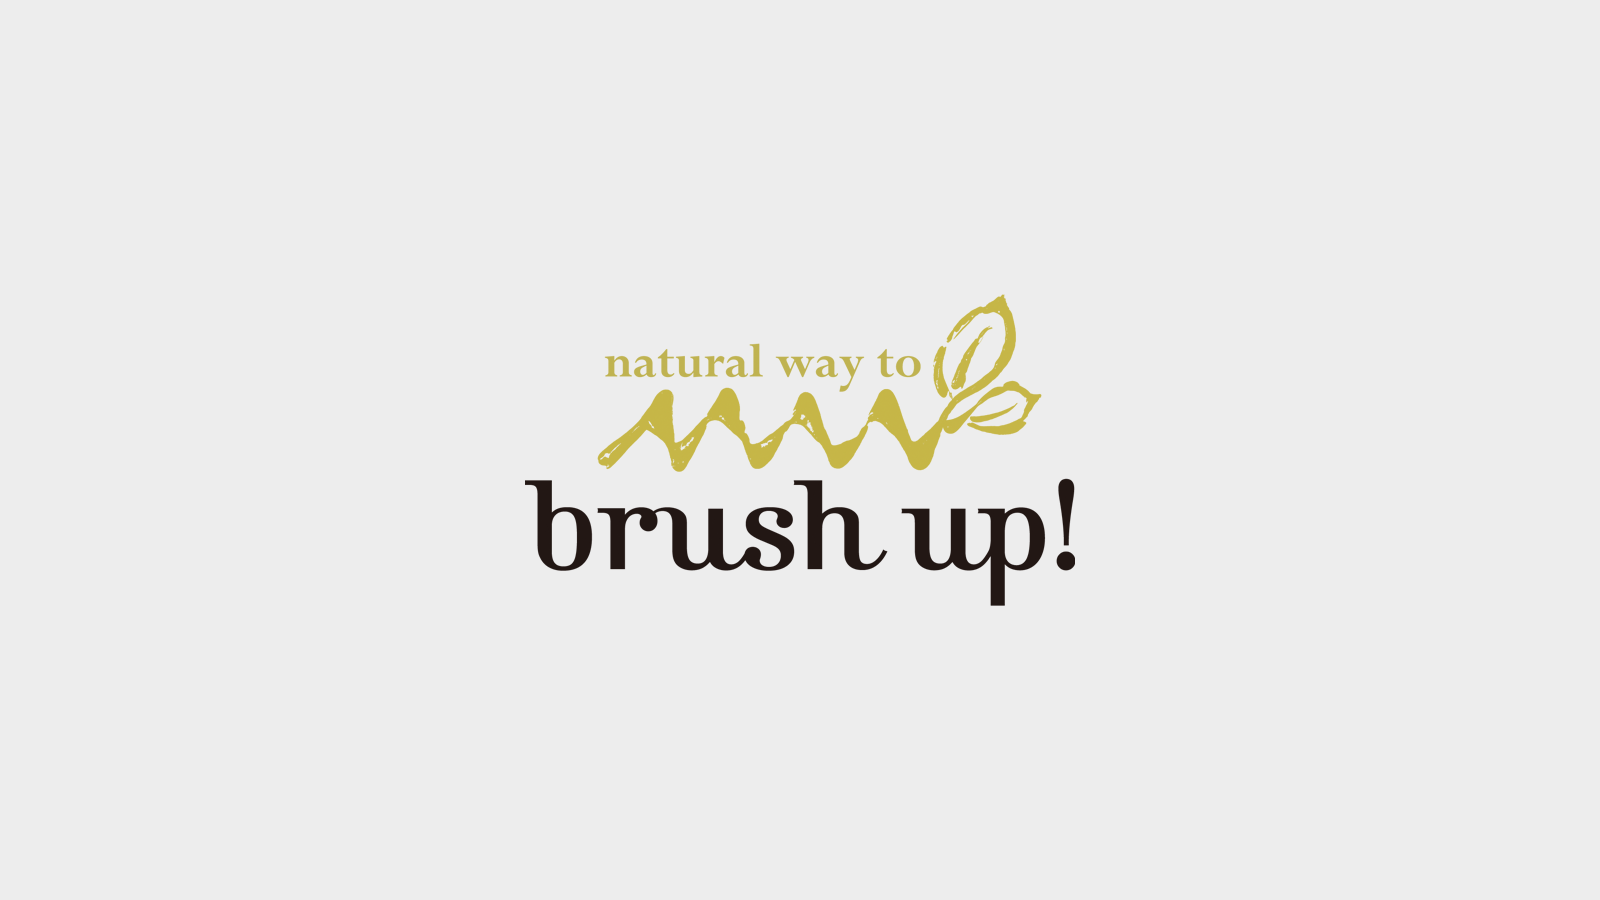 brush up!